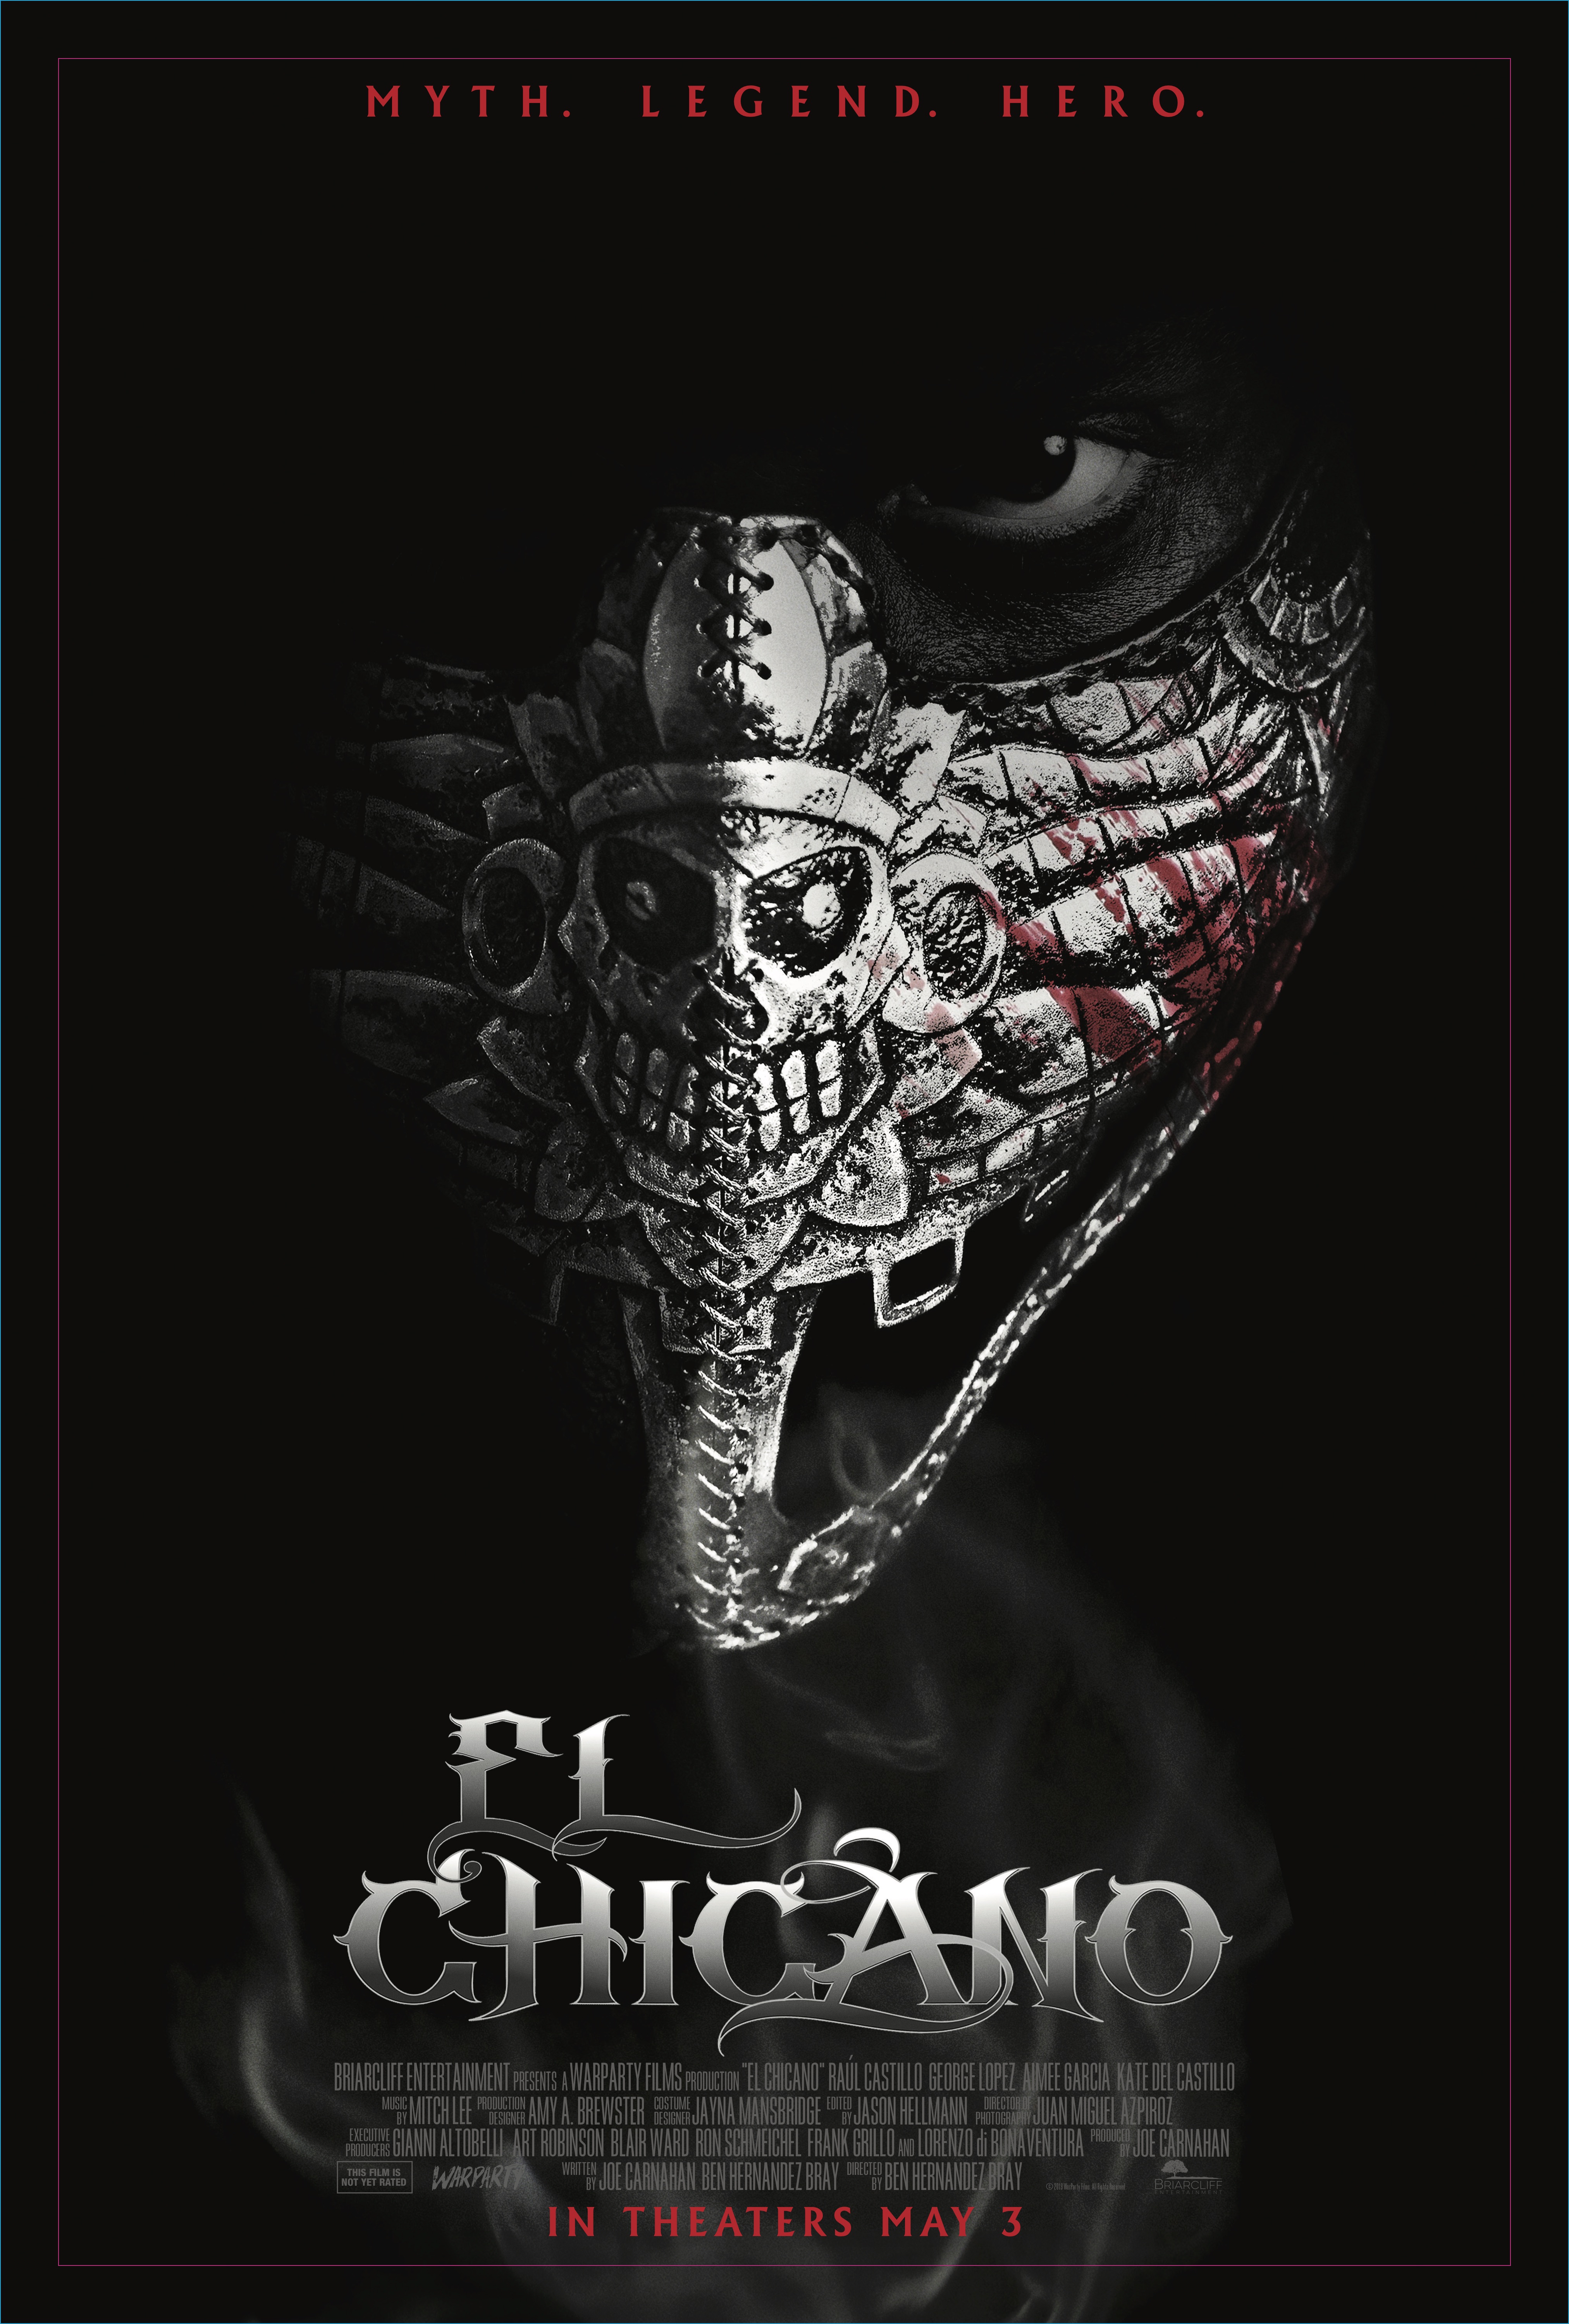 Nonton film El Chicano layarkaca21 indoxx1 ganool online streaming terbaru